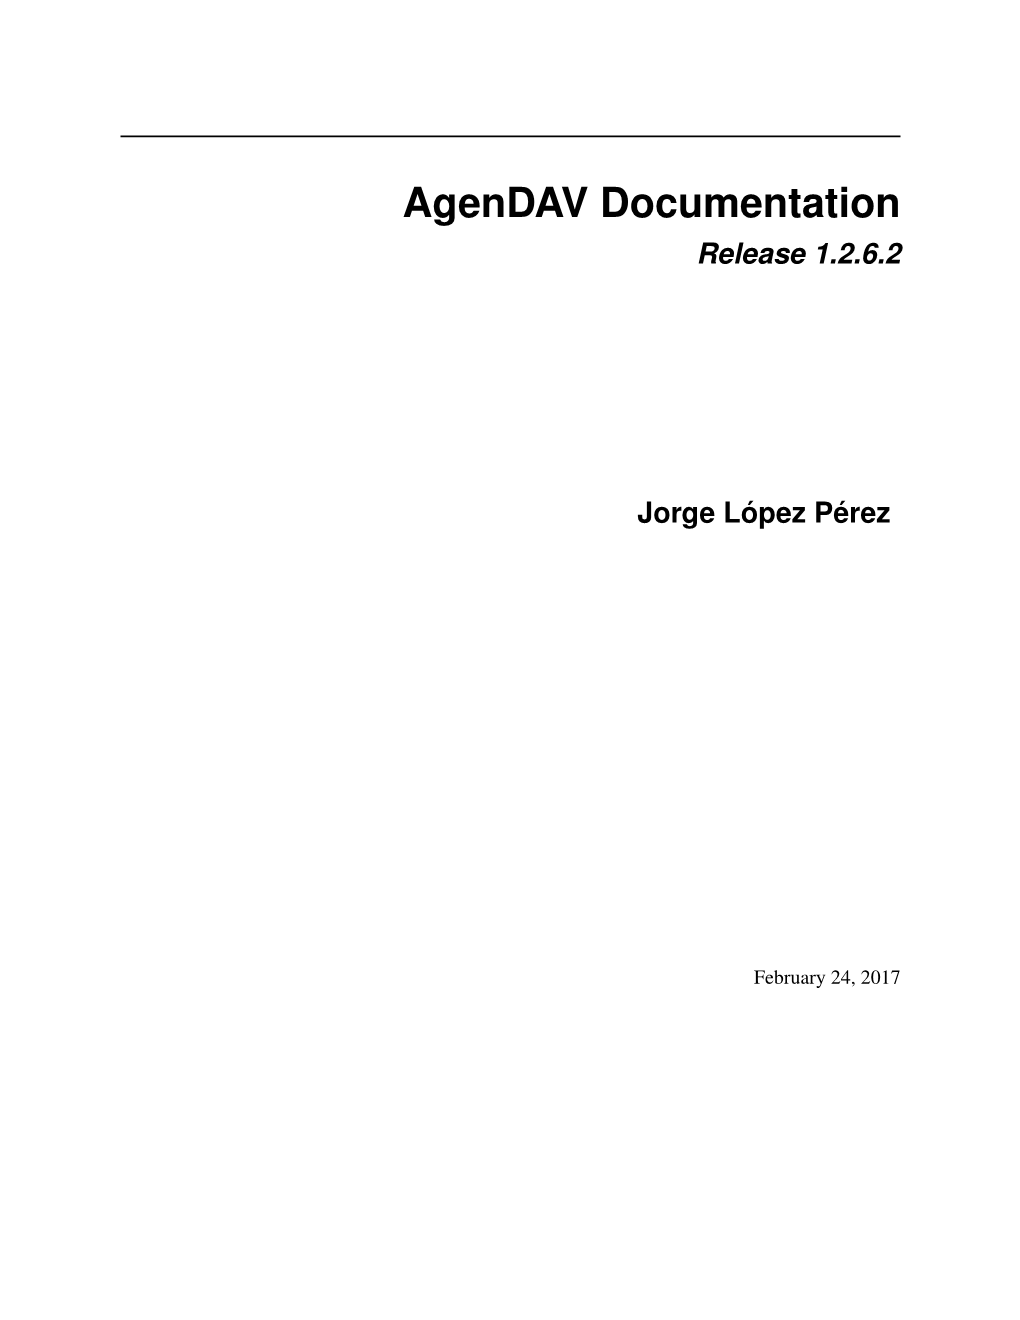 Agendav Documentation Release 1.2.6.2